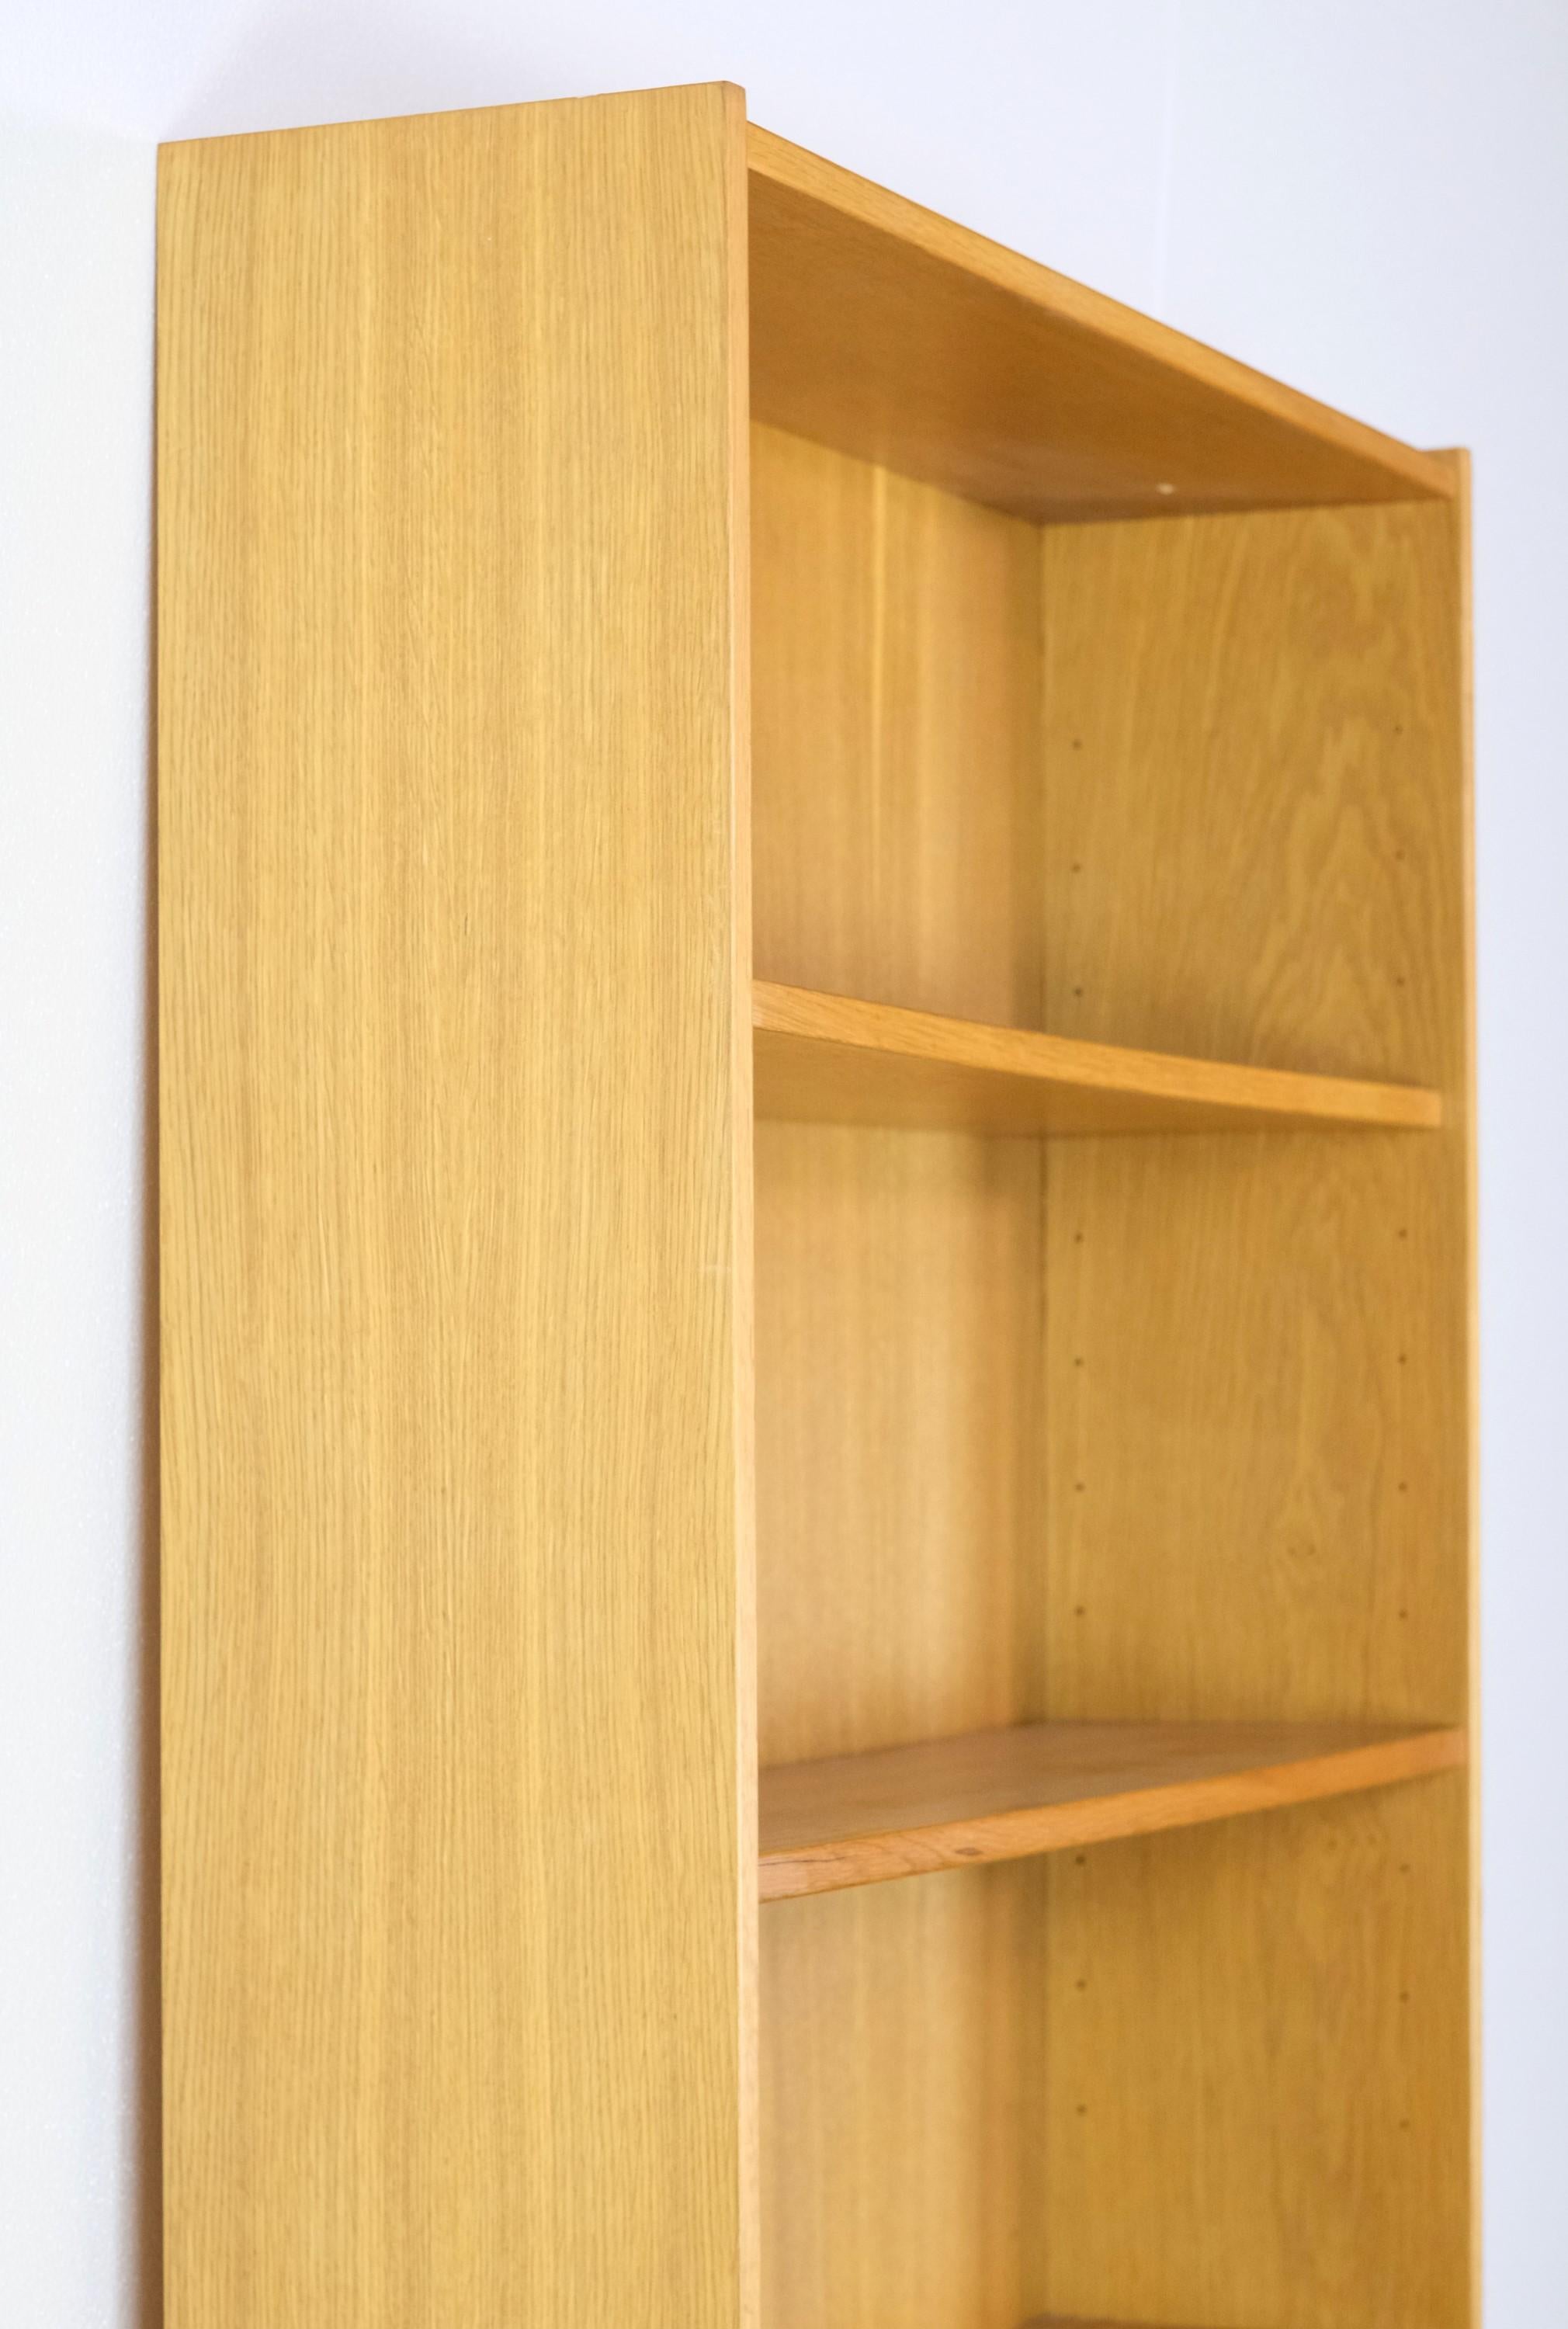 6 shelf bookshelf